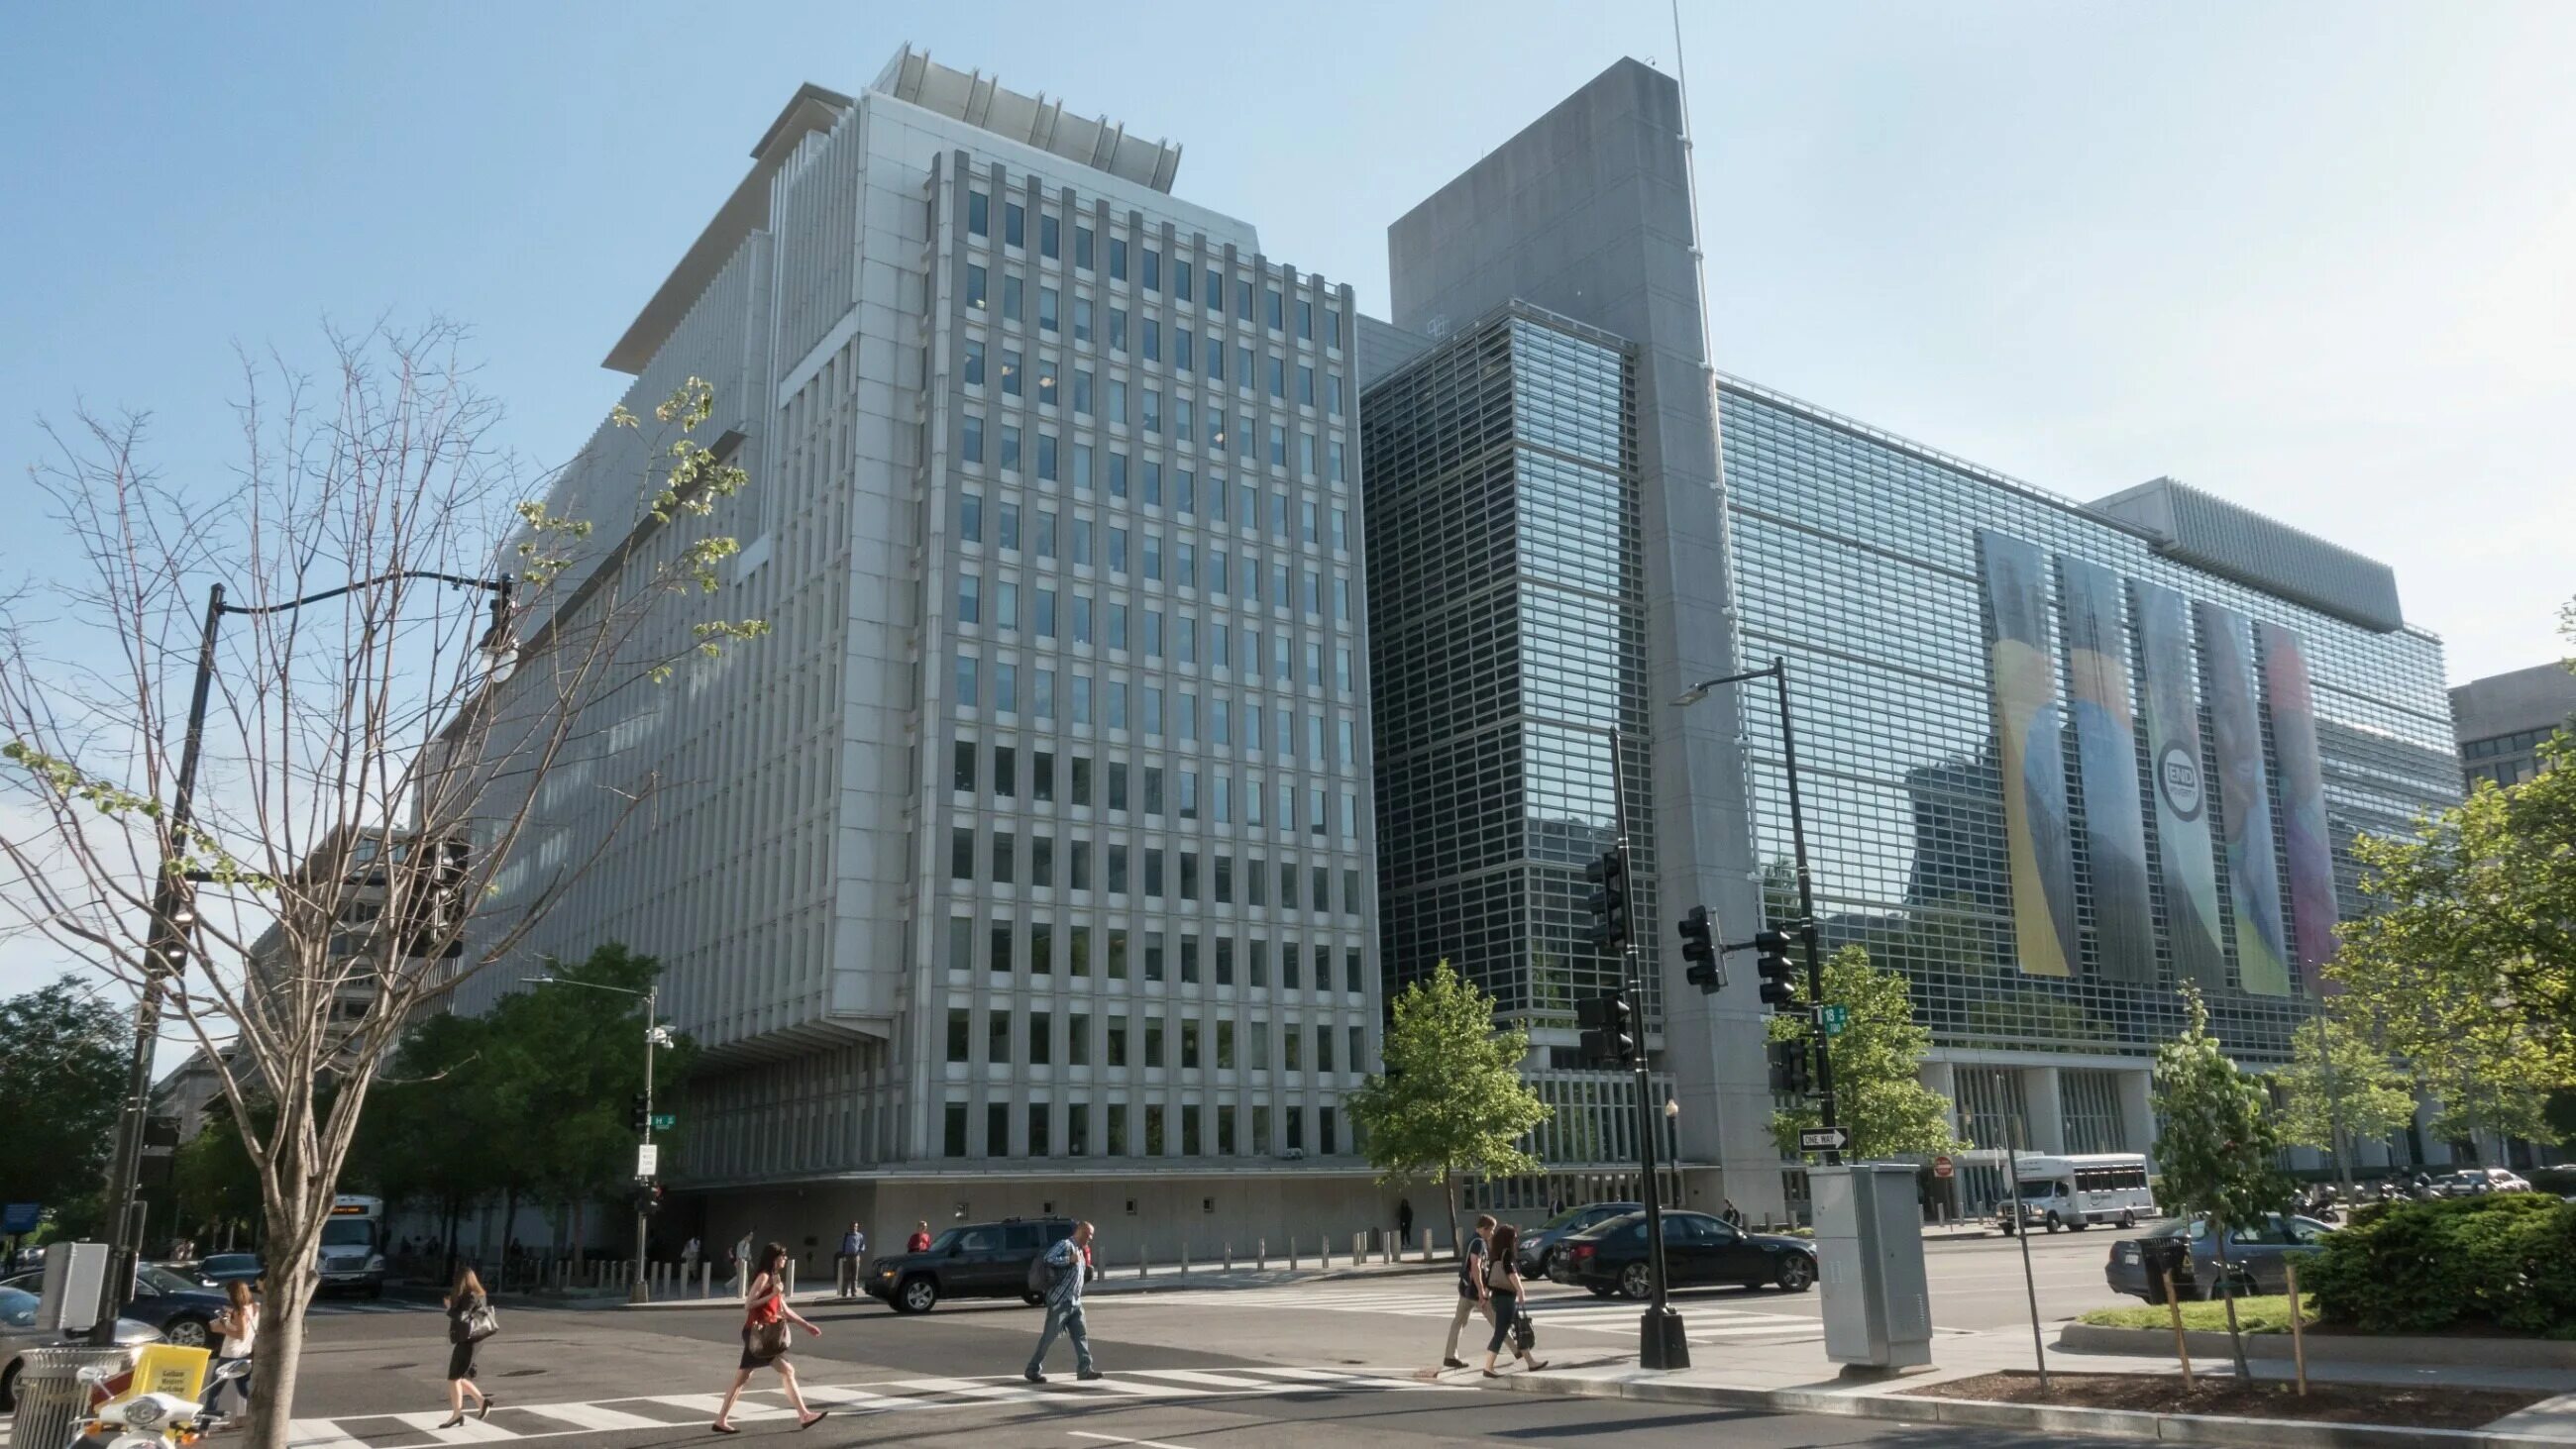 Всемирный банк развития. Всемирного банка (the World Bank). Всемирный банк Вашингтон. Группа Всемирного банка штаб квартира. Штаб-квартира Всемирного банка в Вашингтоне.